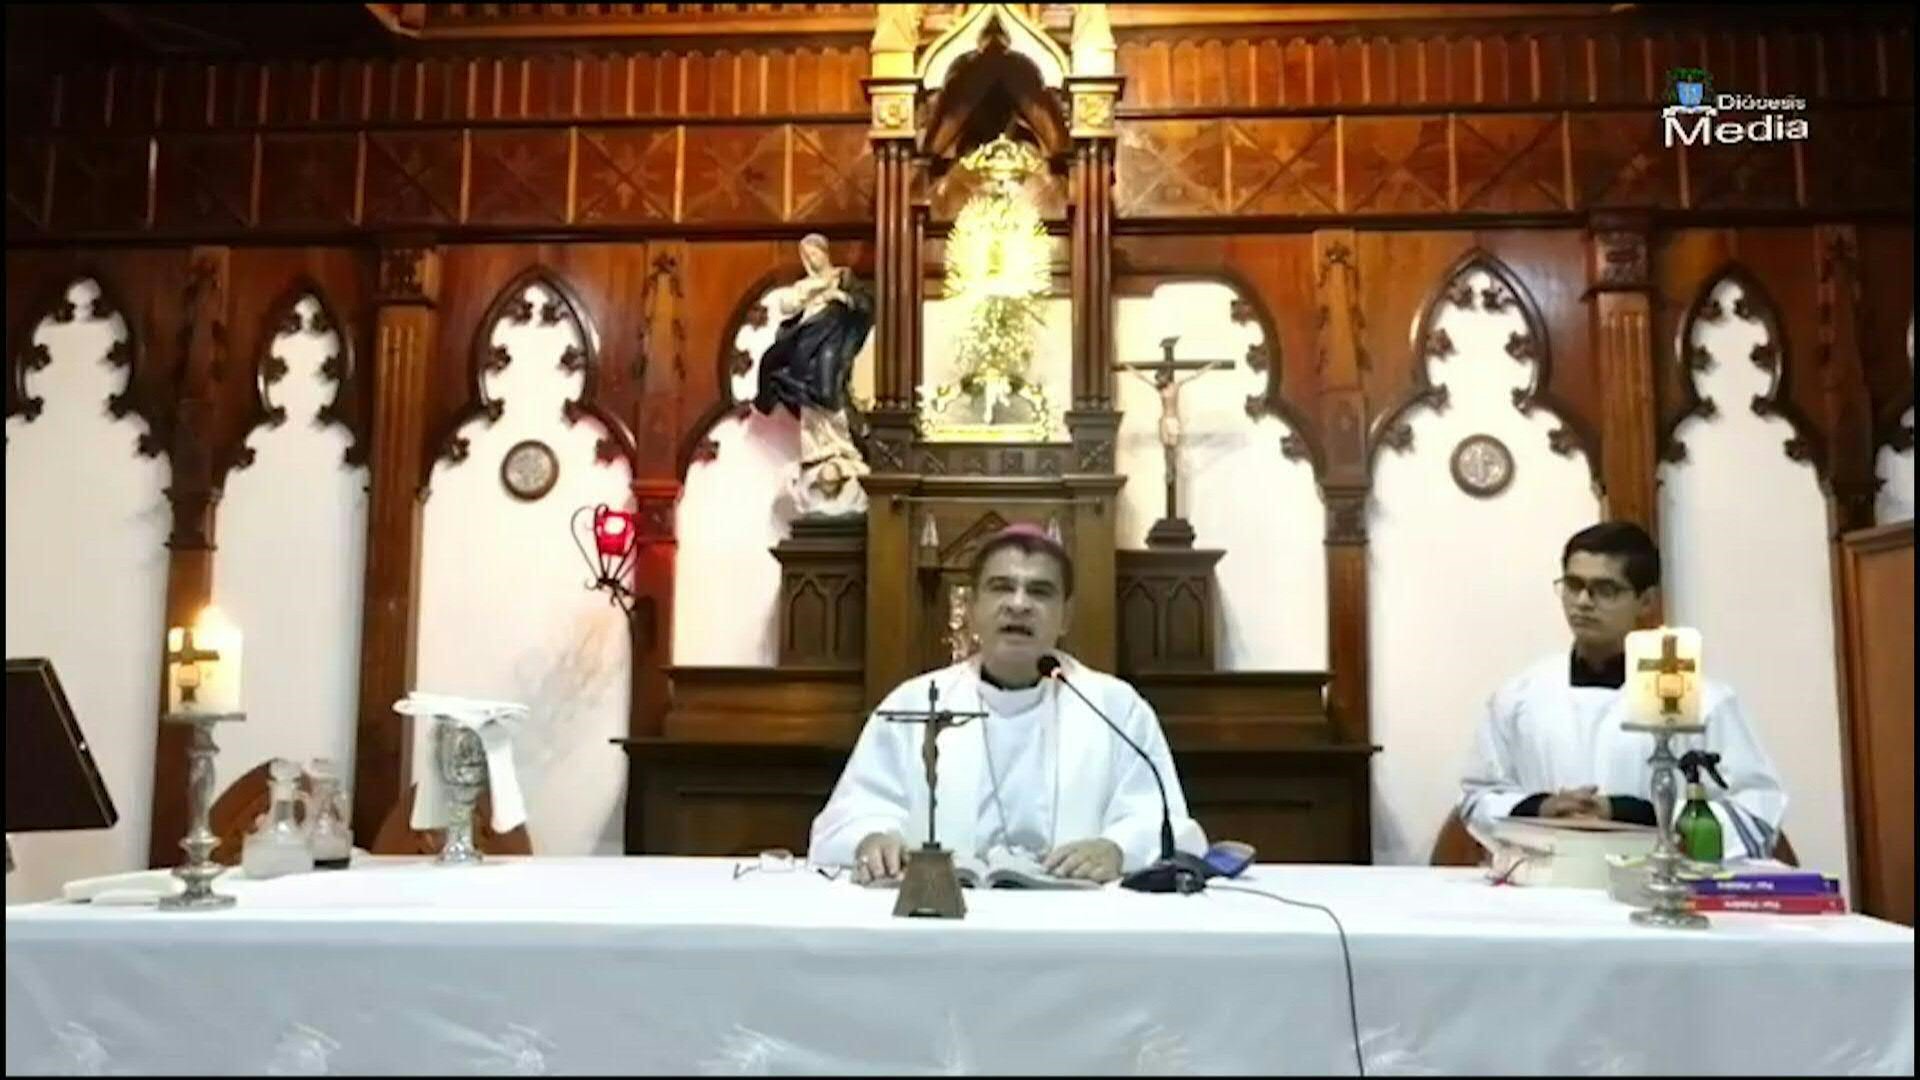 Despues de seis días de silencio, el obispo nicaragüense Rolando Álvarez reapareció oficiando misa desde la curia donde se encuentra recluido. (Imagen Diócesis de Matagalpa)